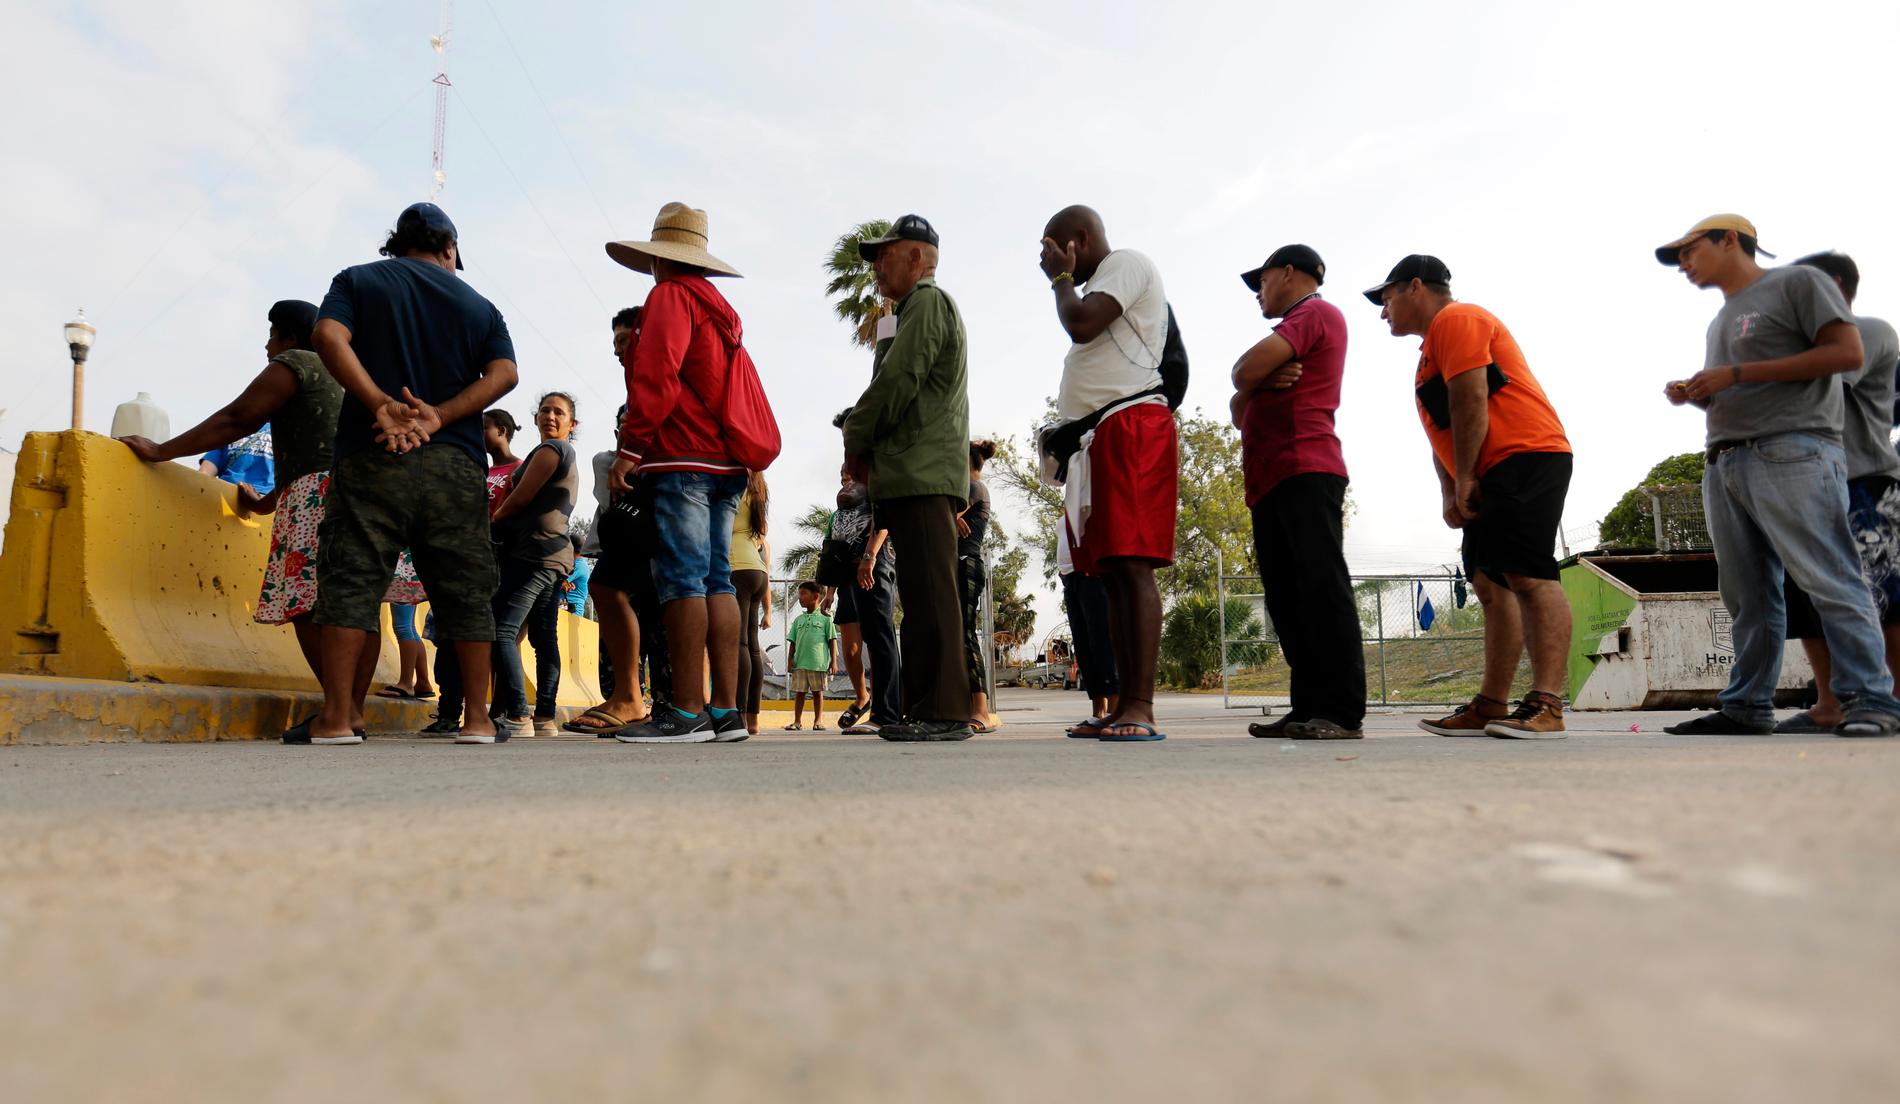 Migranter som söker asyl i USA köar för att få ett mål mat som delas ut av volontärer i Matamoros i Mexiko, nära gränsen till USA. Bilden är från den 29 april 2019.